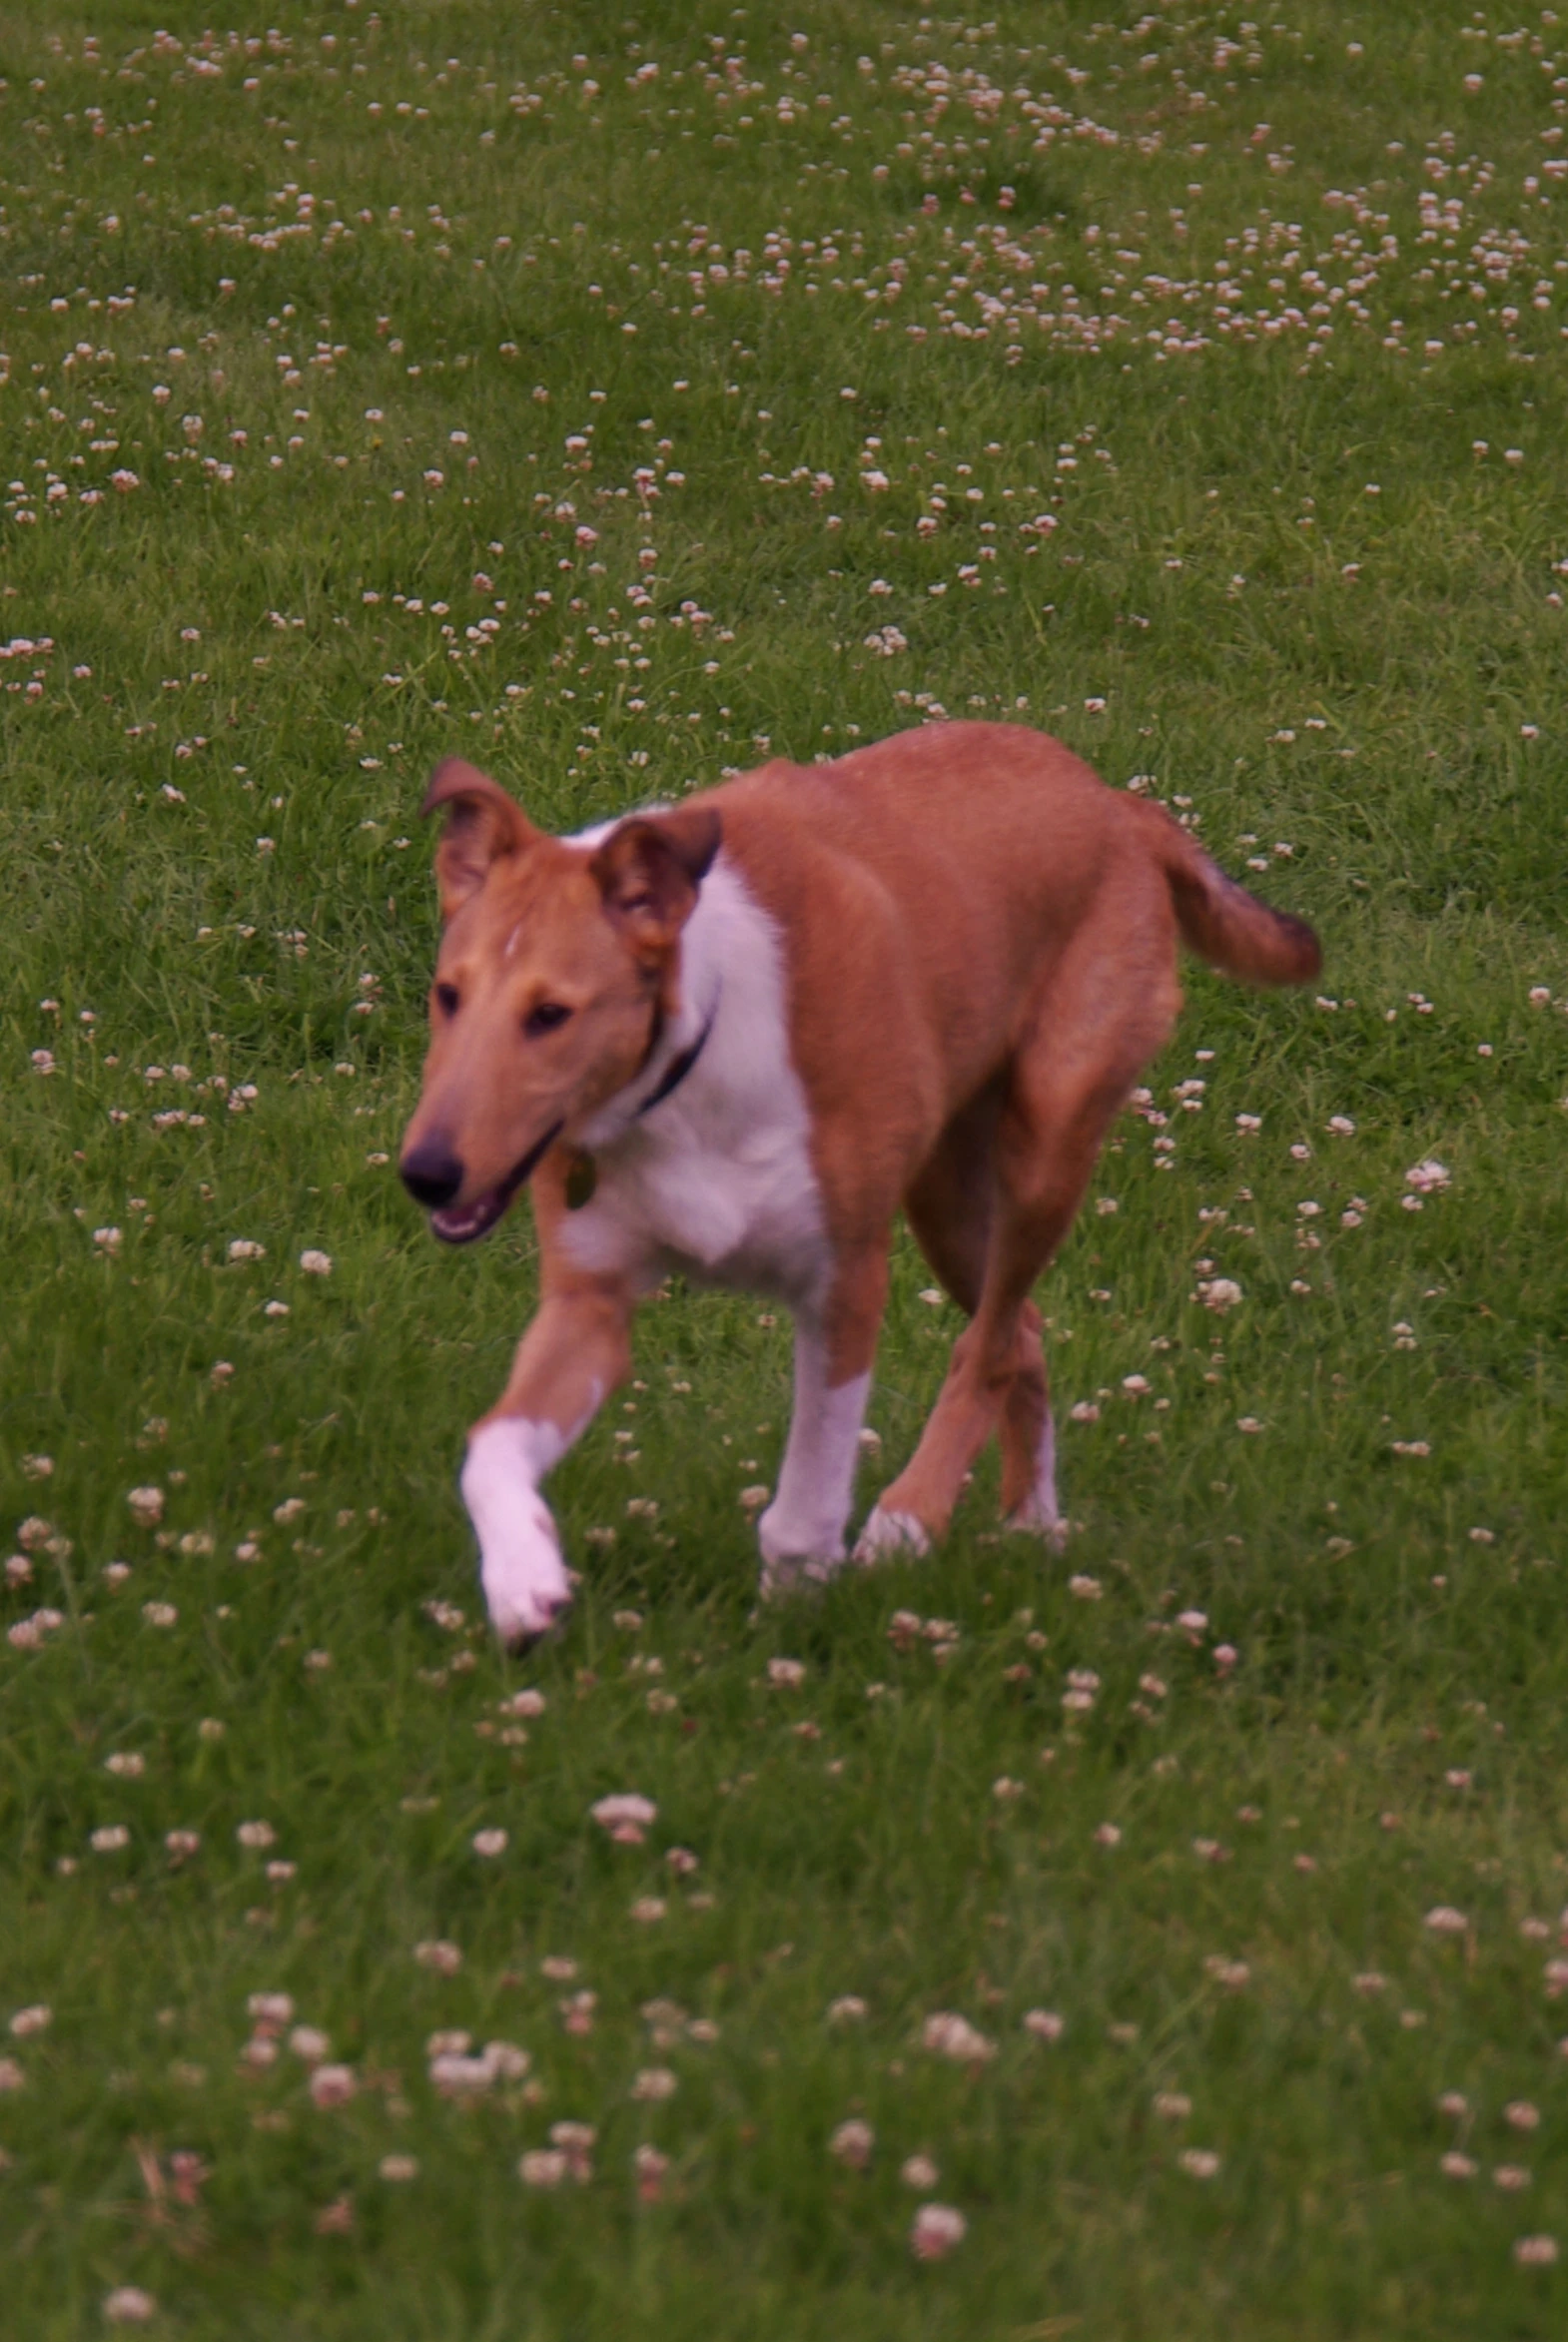 a dog running in a field of green grass